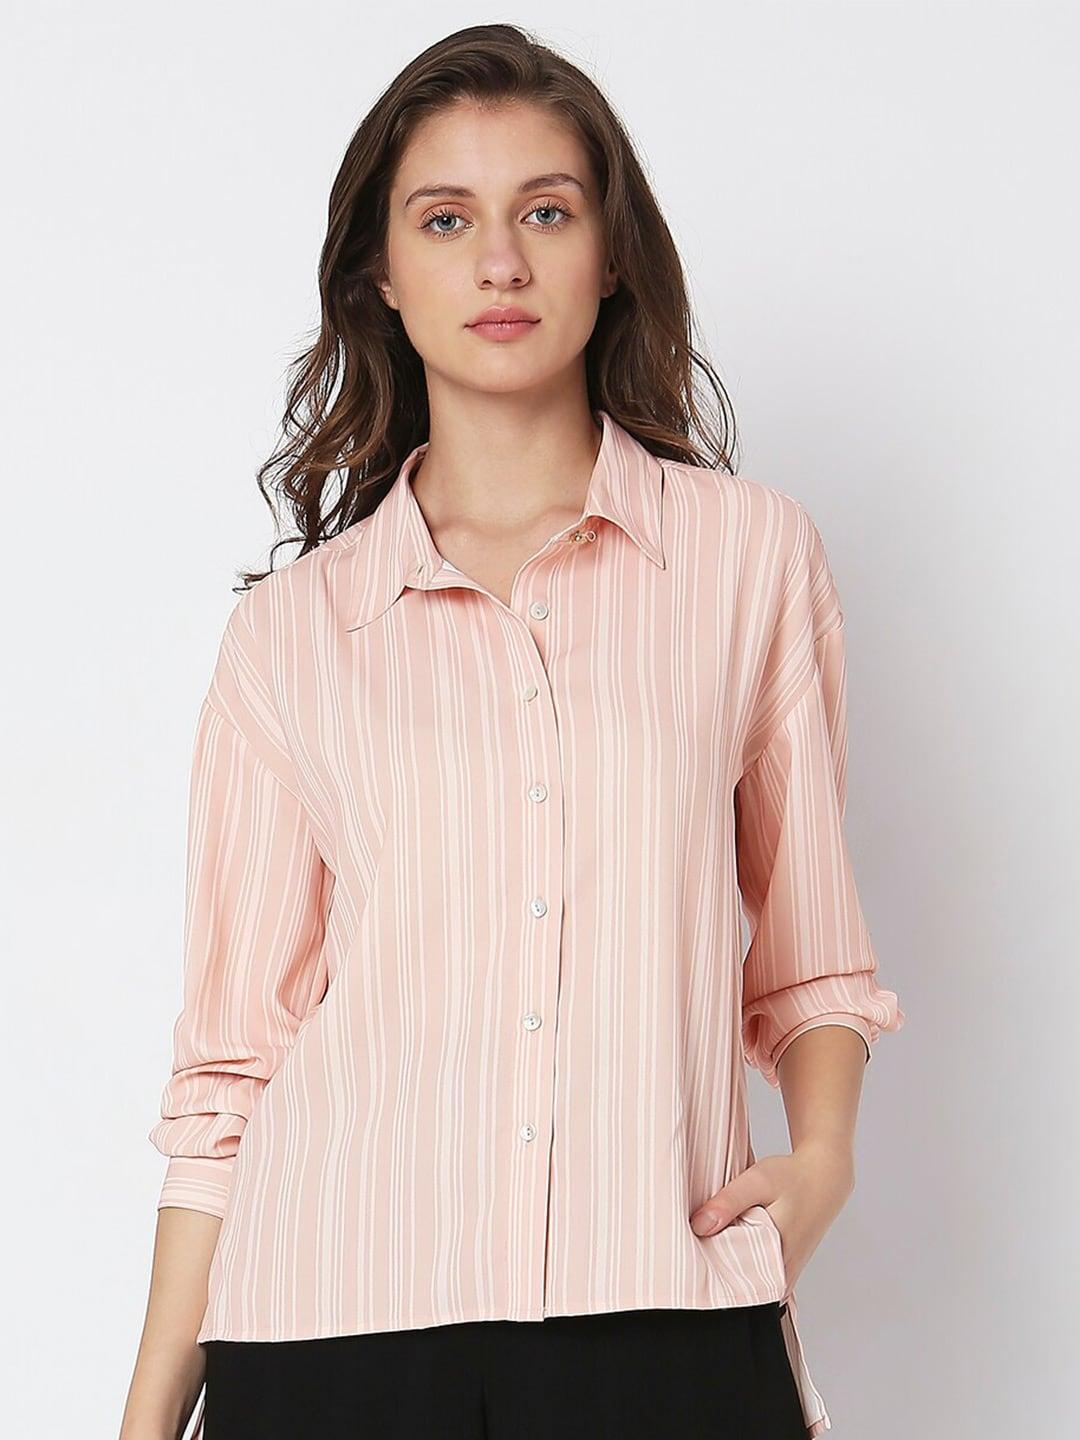 Vero Moda Vertical Striped Casual Shirt